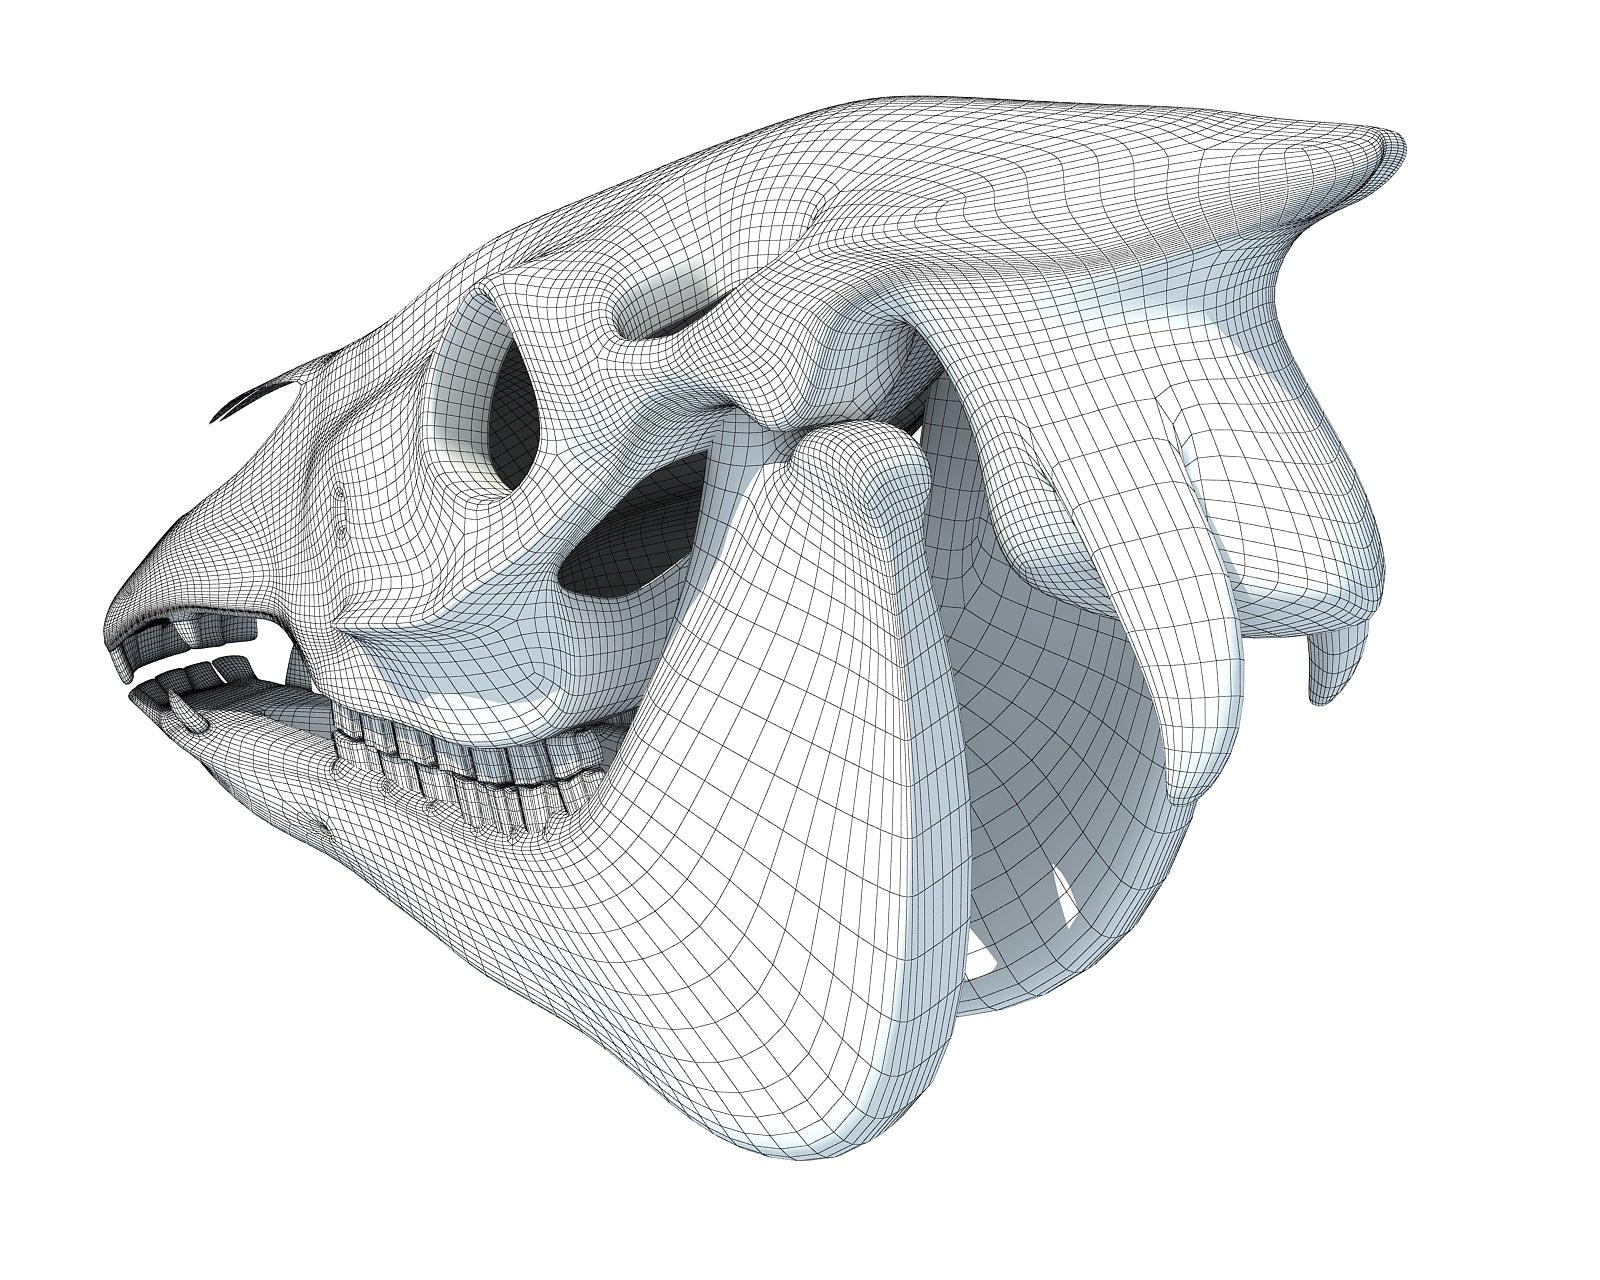 Donkey Skull 3D Model